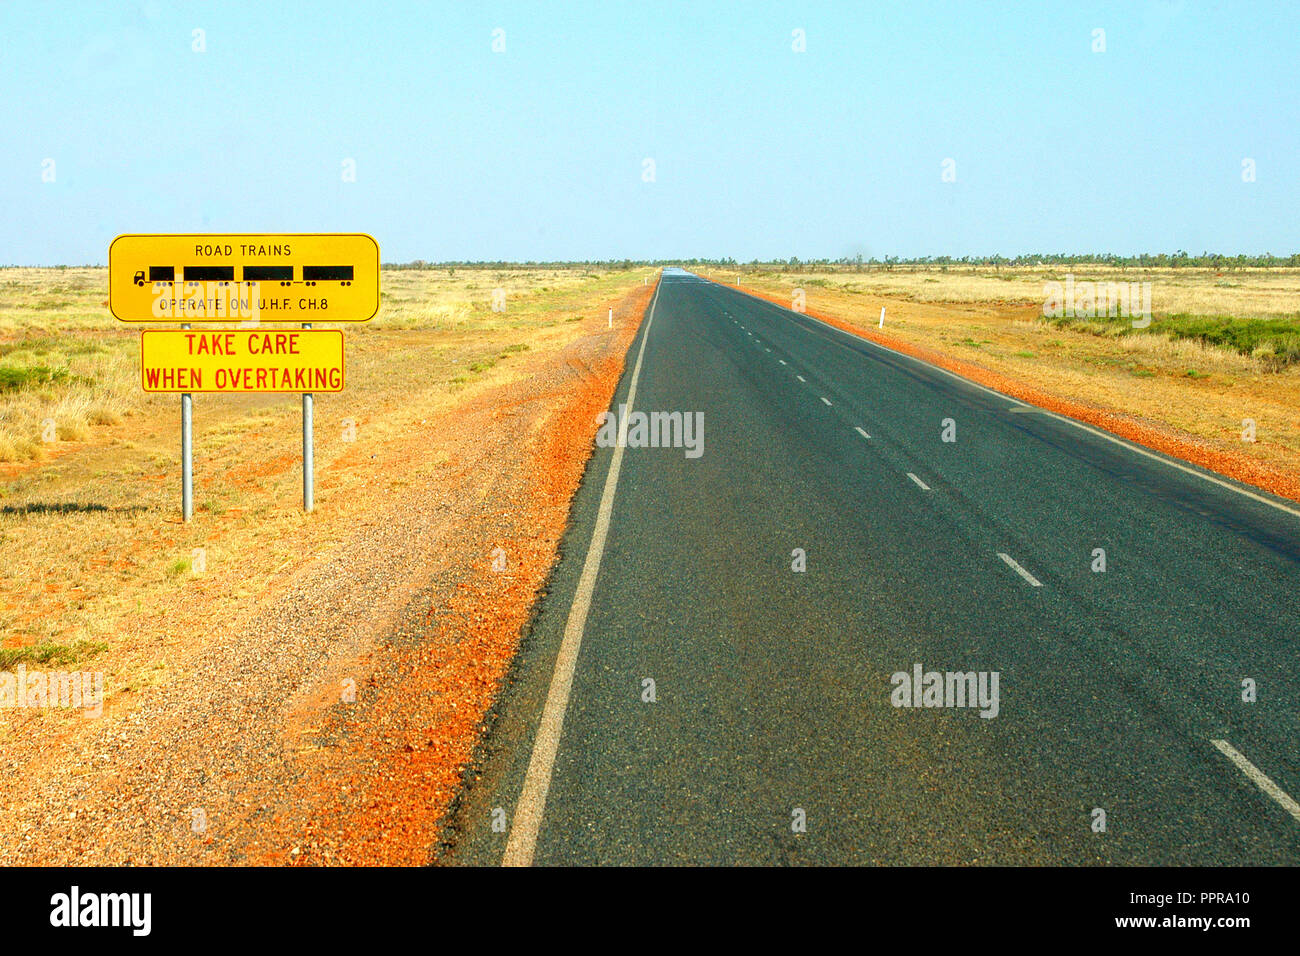 ROAD TRAIN SEGNO, prestare la massima attenzione durante i sorpassi, OUTBACK AUTOSTRADA, Australia occidentale Foto Stock